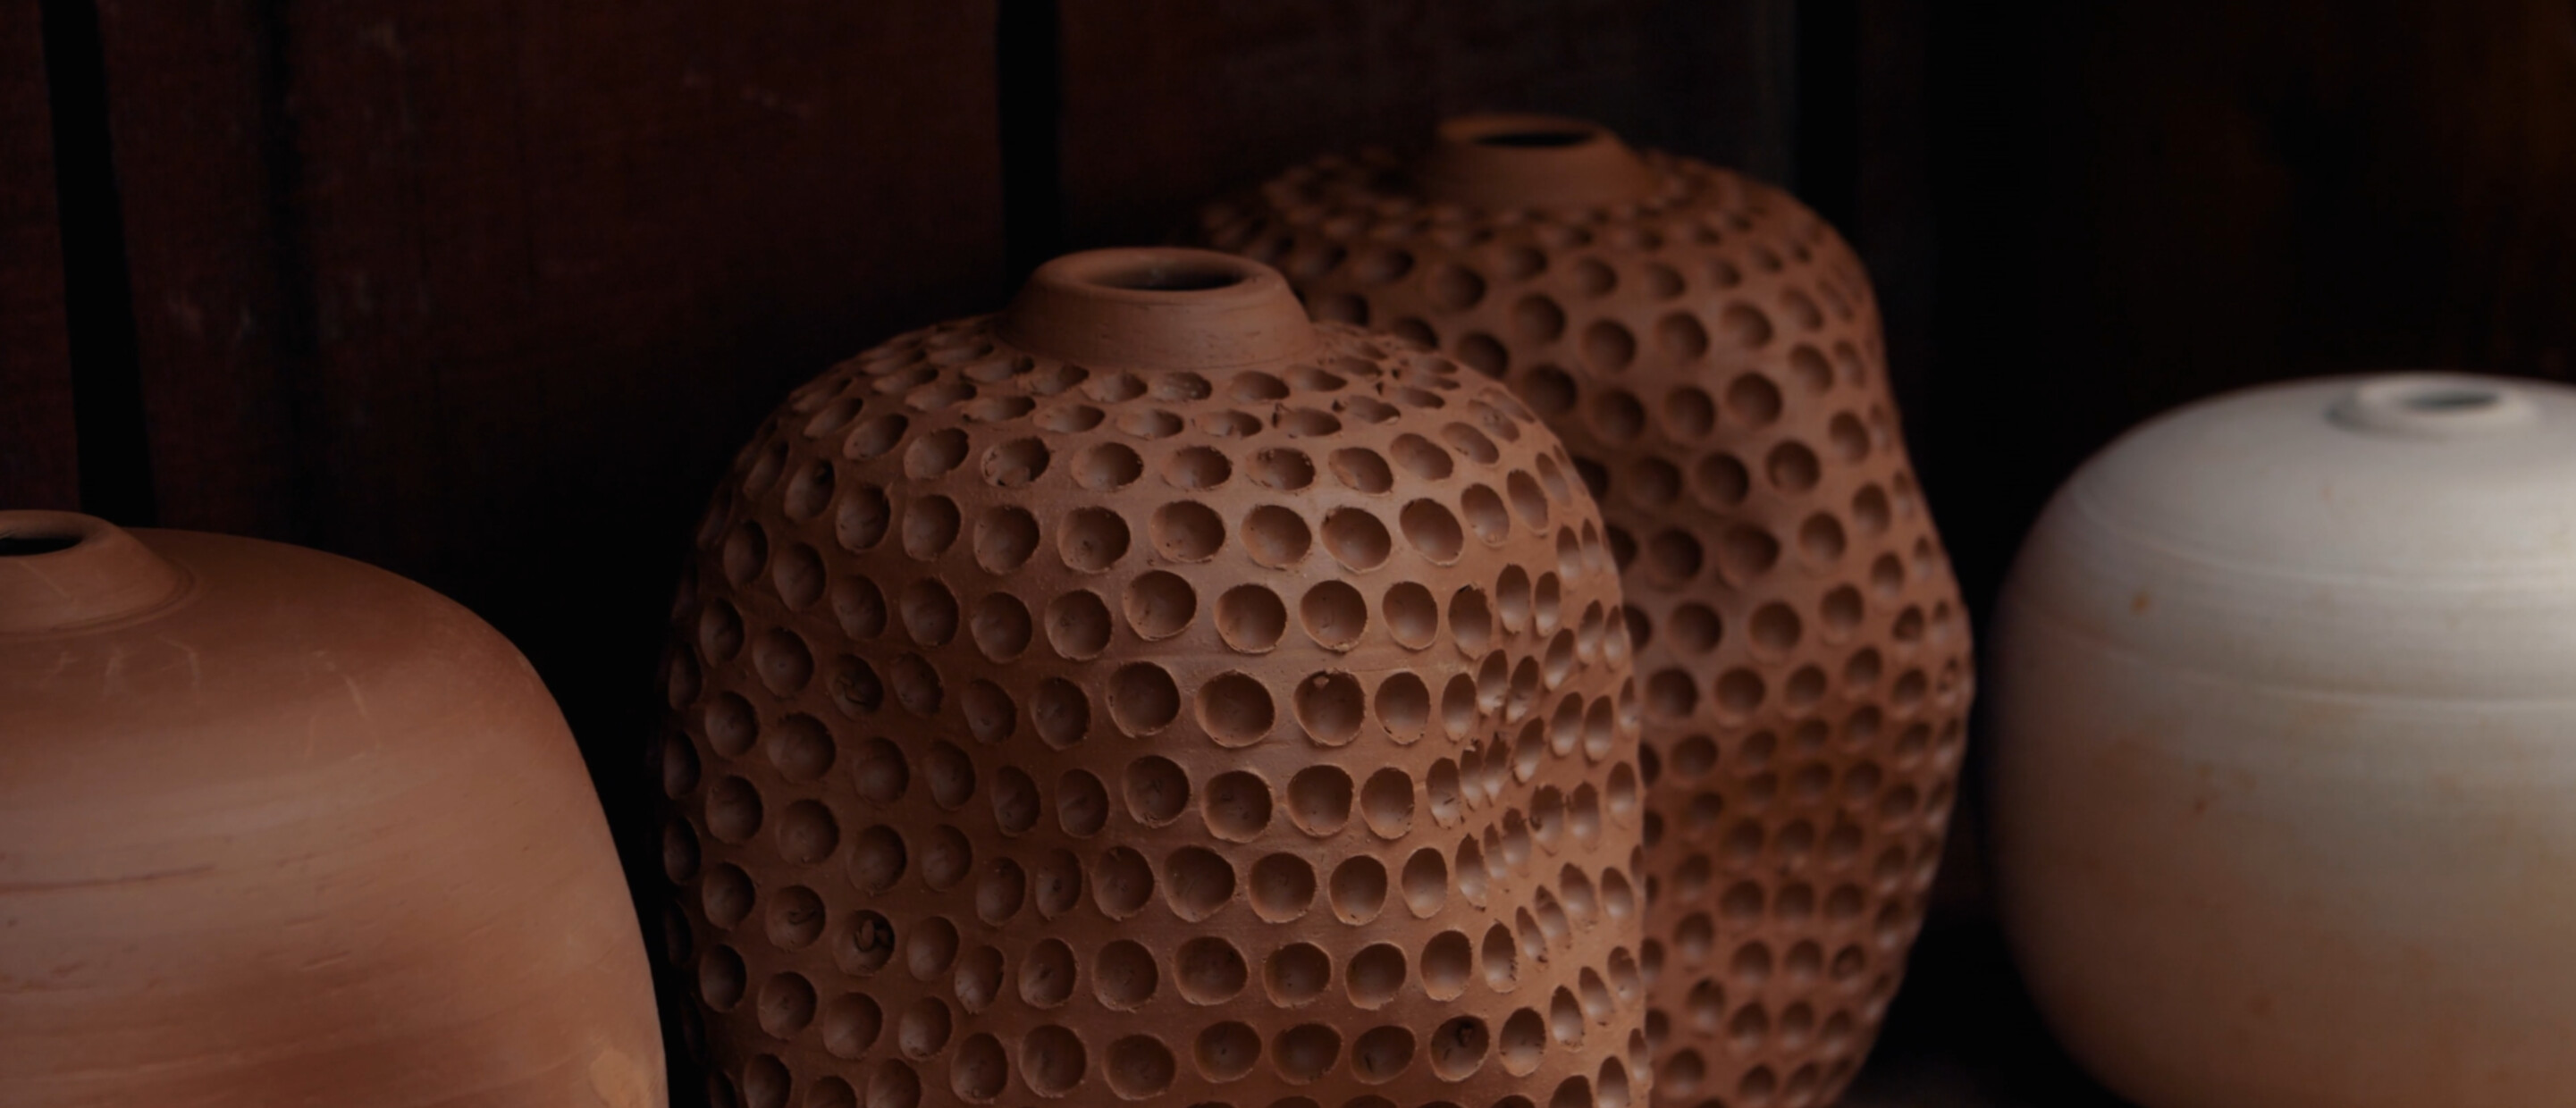 Works of ceramic vases in progress